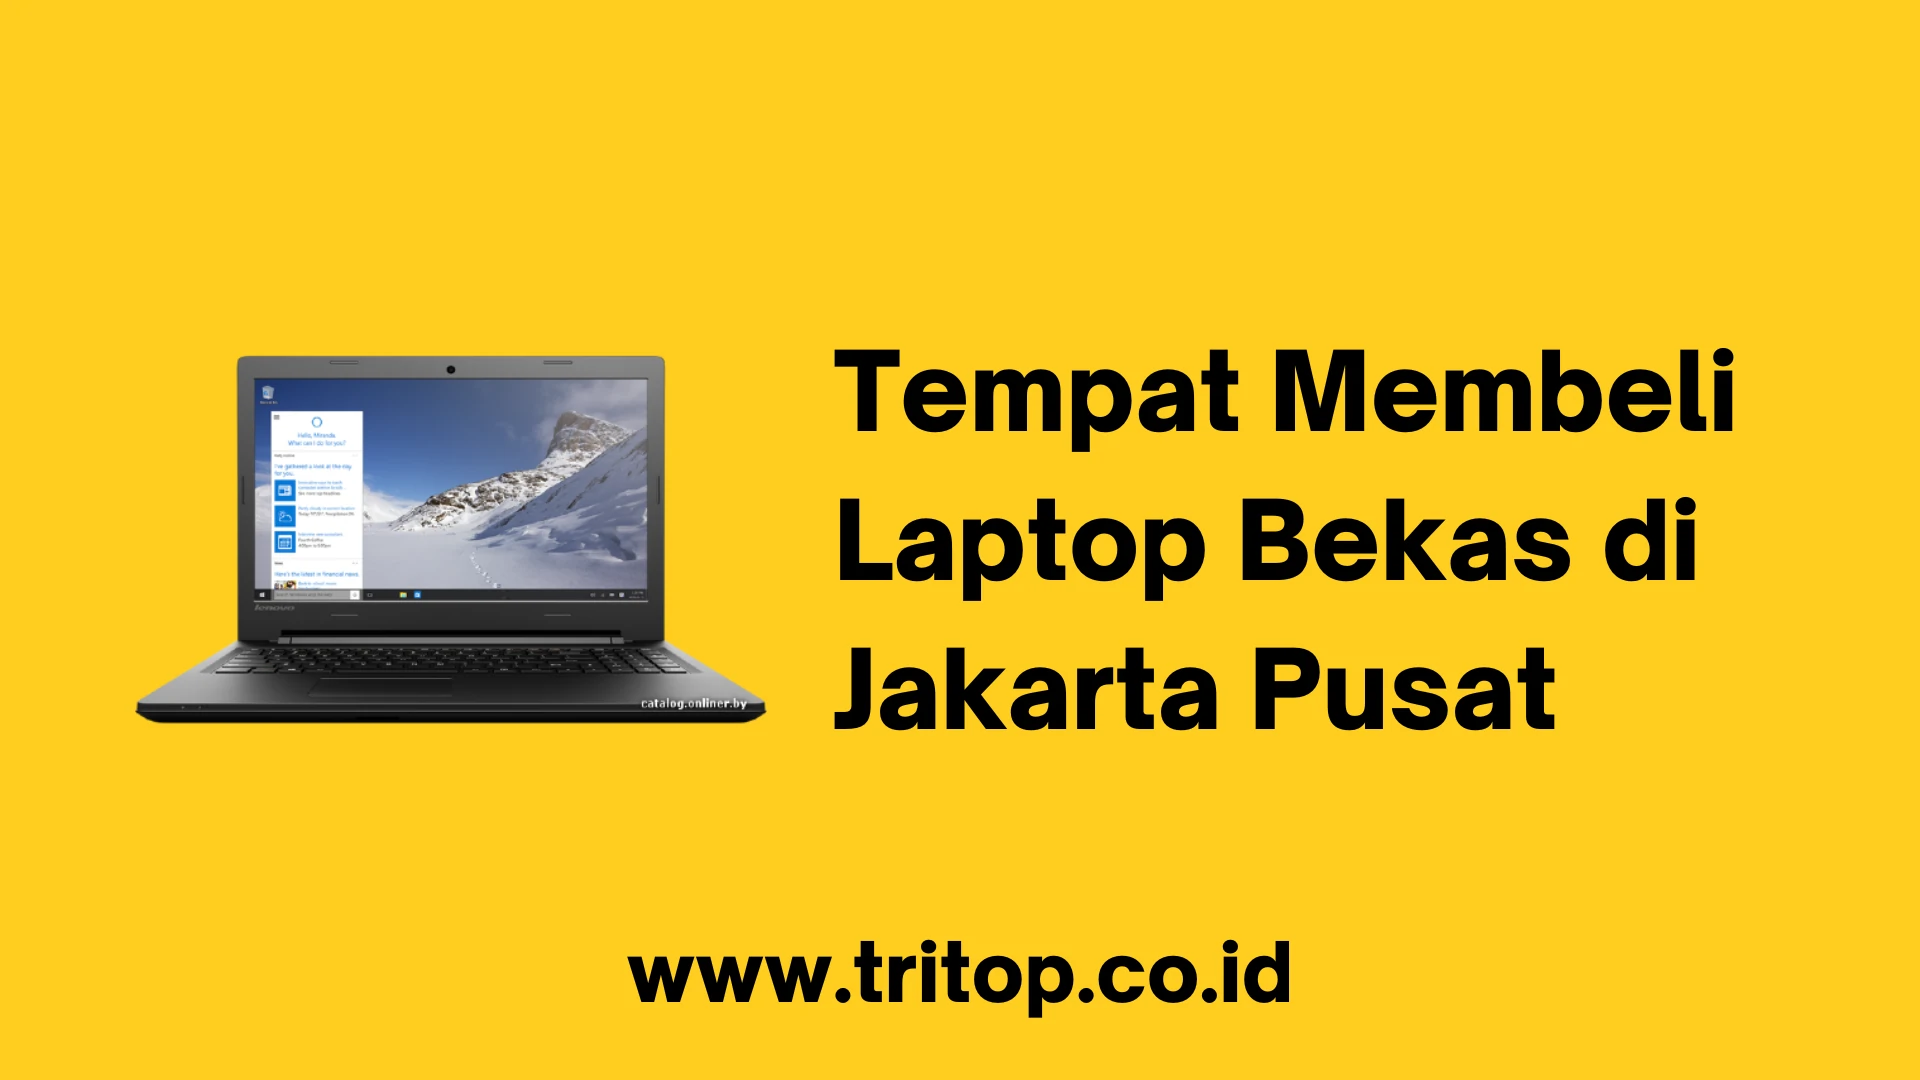 Laptop Bekas Jakarta Pusat